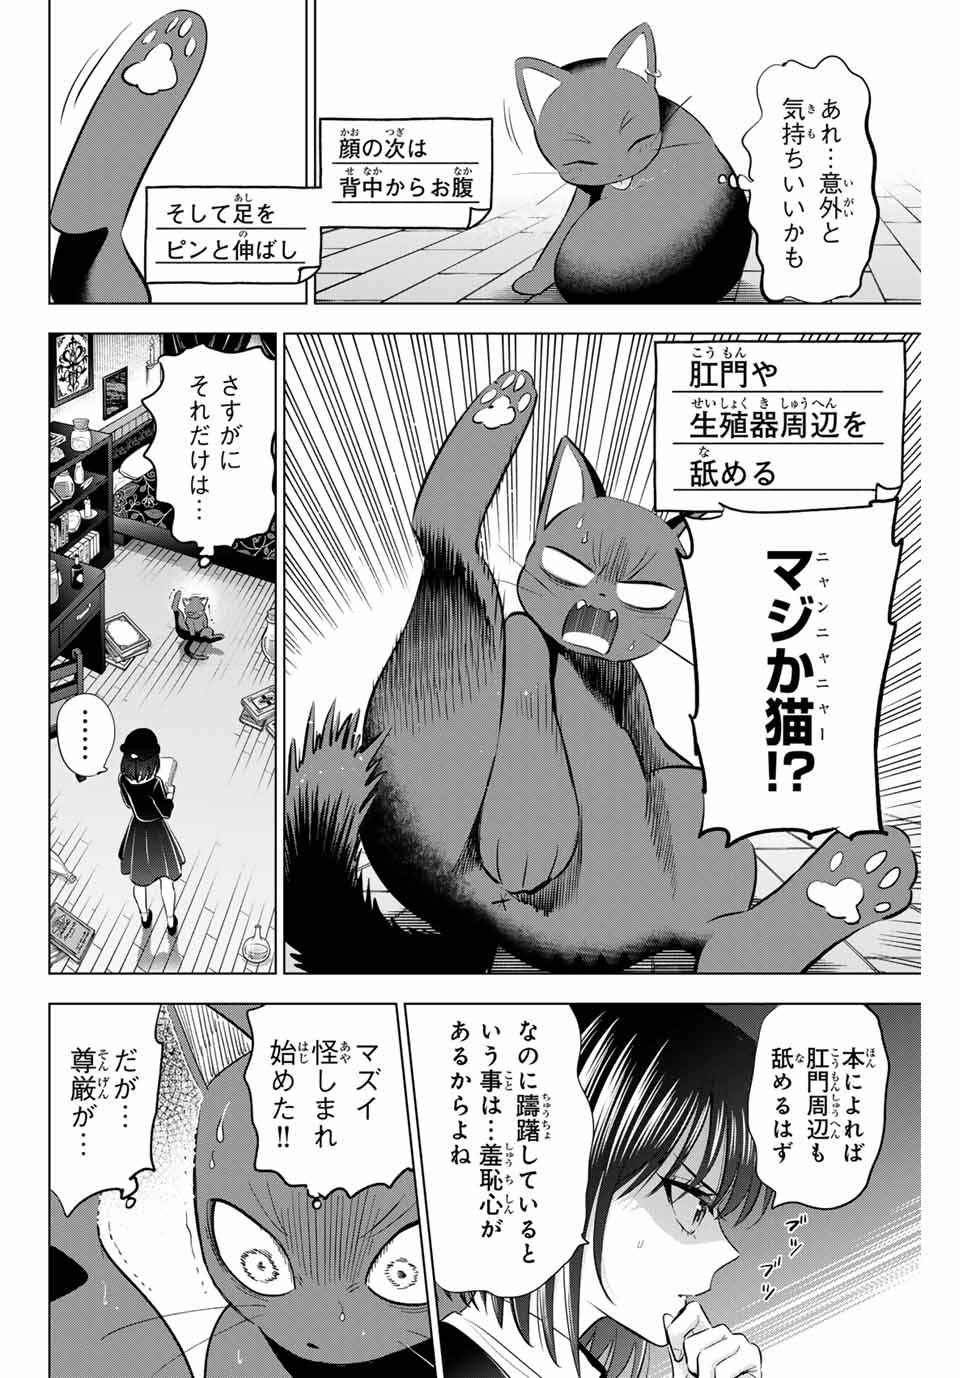 Kuroneko to Majo no Kyoushitsu - Chapter 61 - Page 16